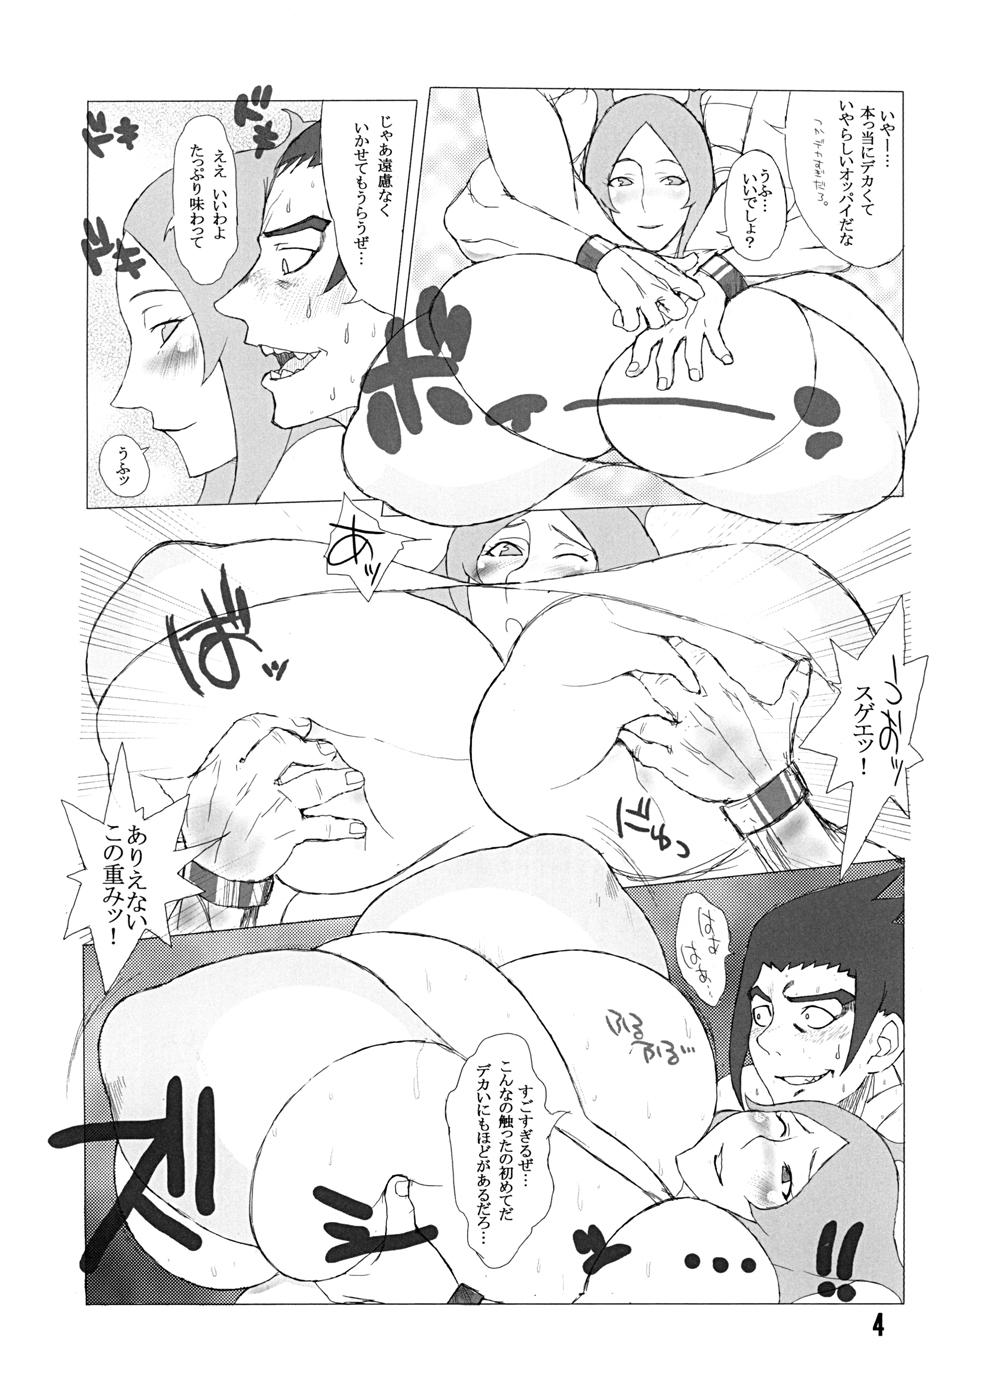 Outdoor Sex Hybrid Tsuushin Zoukangou vol.01 - Queens blade Dragonaut Seikon no qwaser Gay 3some - Page 4